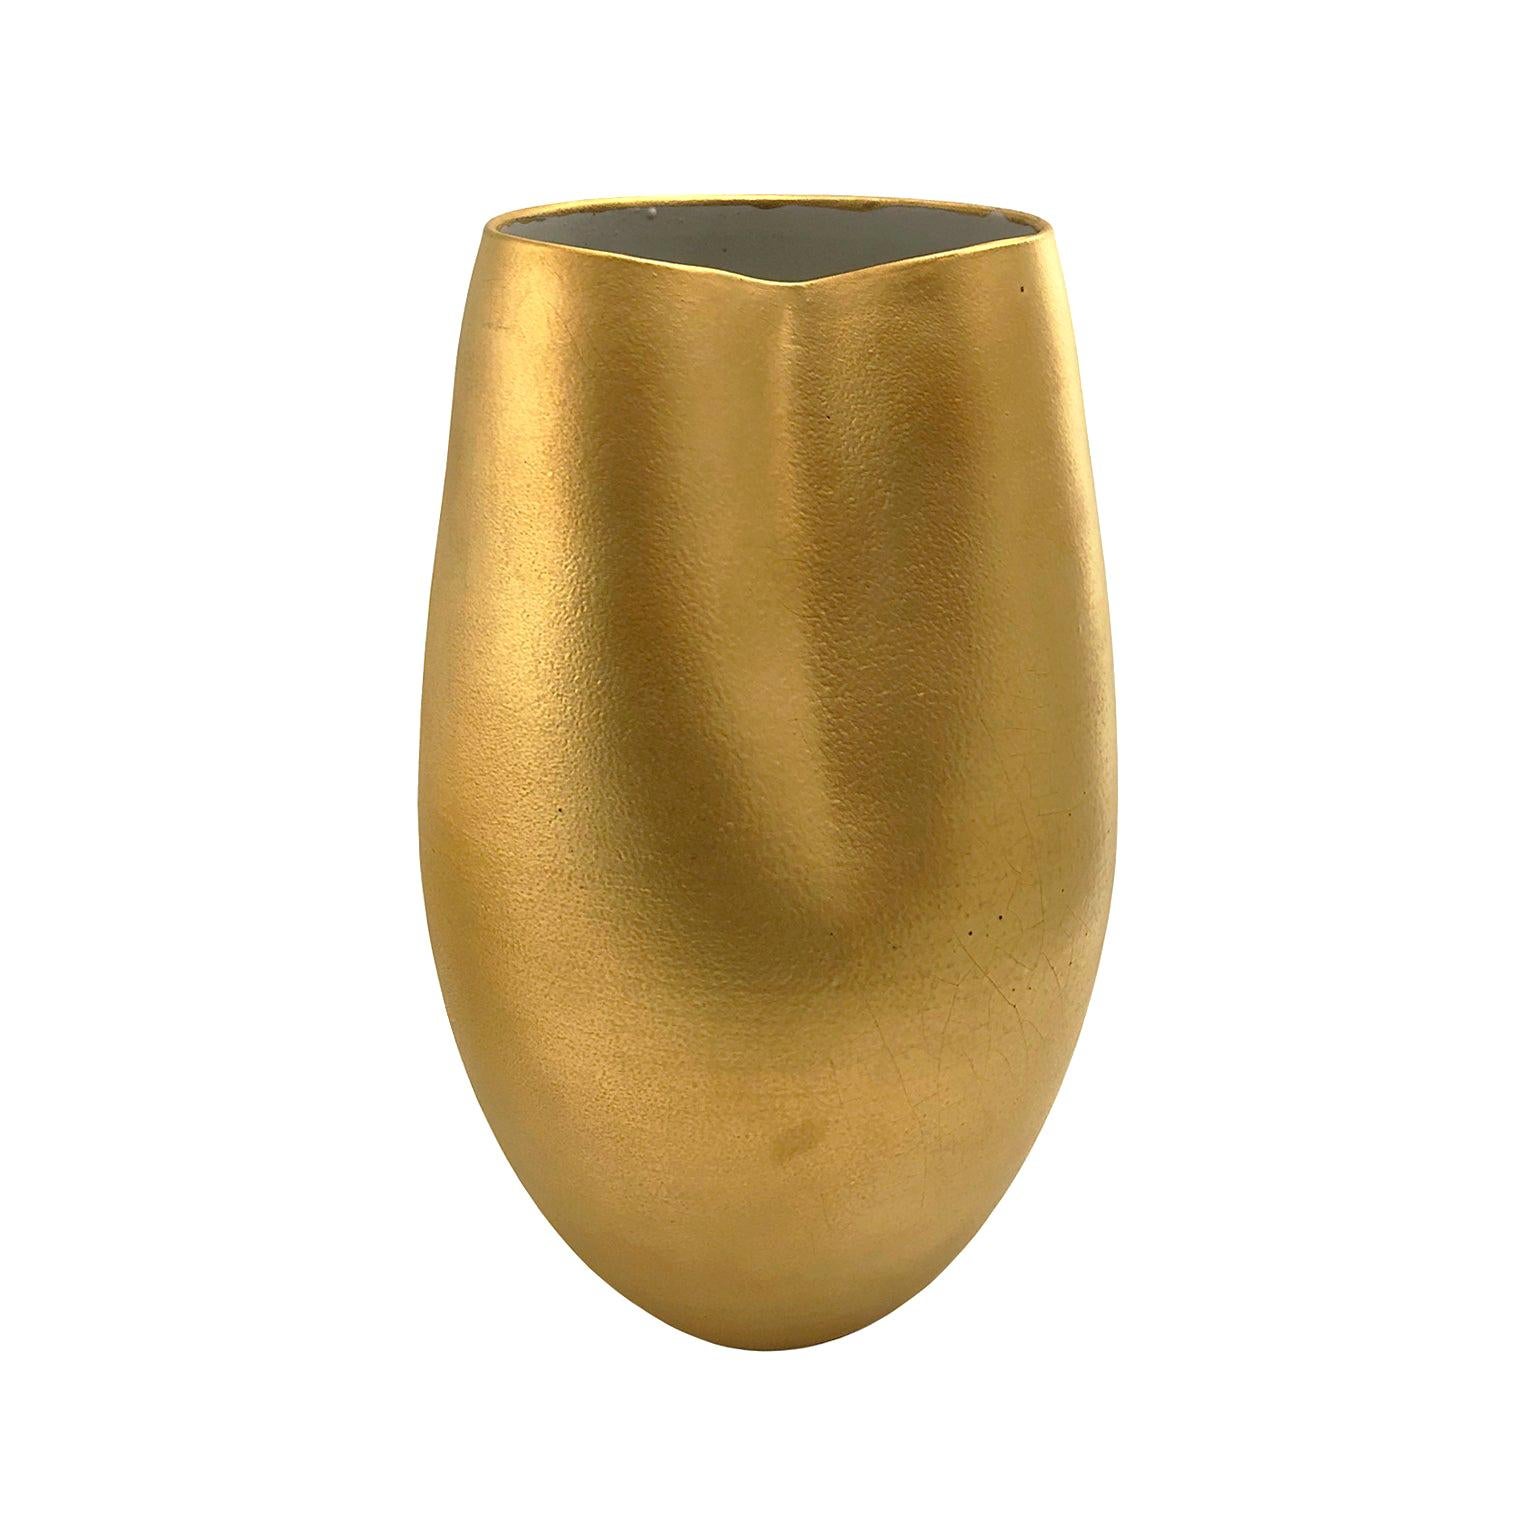 Wide Mouth Ceramic Vase in 22-Karat Matte Crackle Gold Glaze by Sandi Fellman For Sale